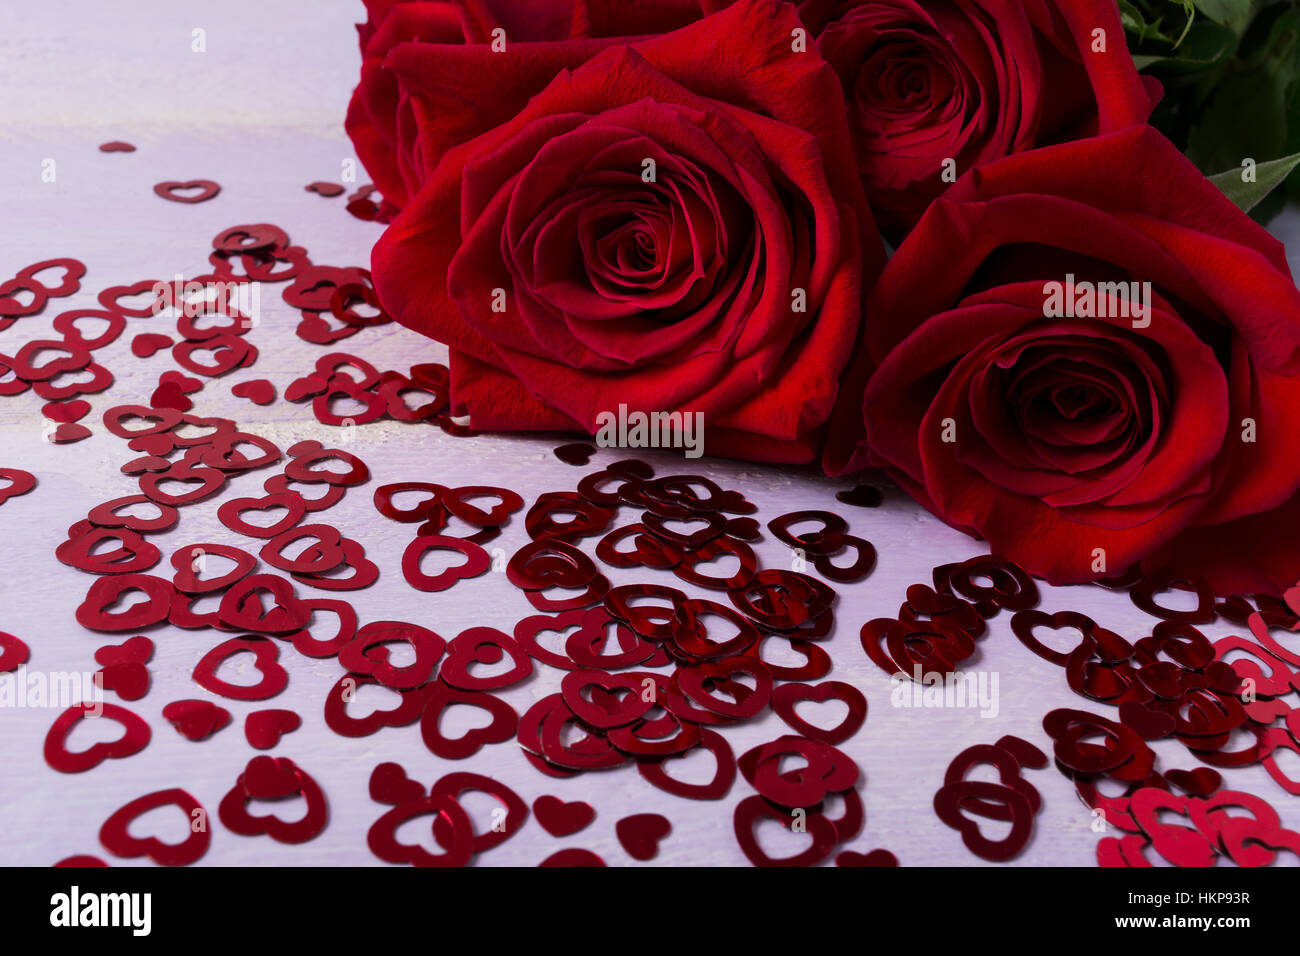 Dunkle rote Rosen und Herzen Symbole auf lila Hintergrund. St. Valentin-Tag-Grußkarte. Elegante Hochzeit Tag Einladung. Kopieren Sie Raum. Stockfoto